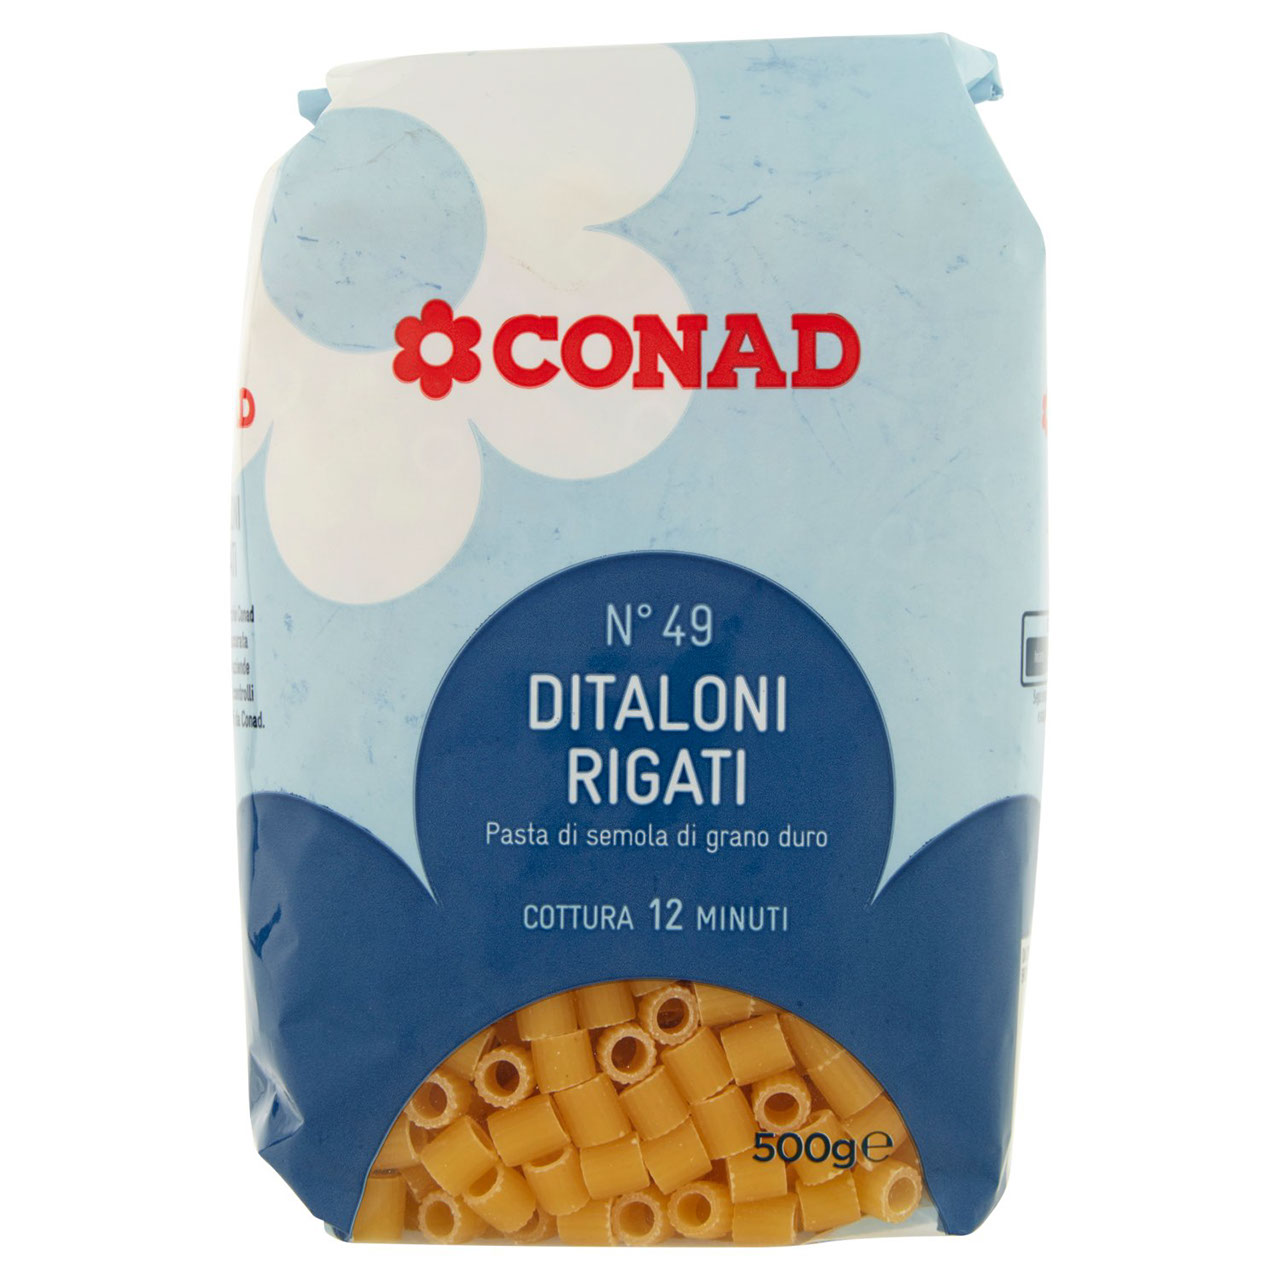 Ditaloni Rigati 500 g Conad in vendita online